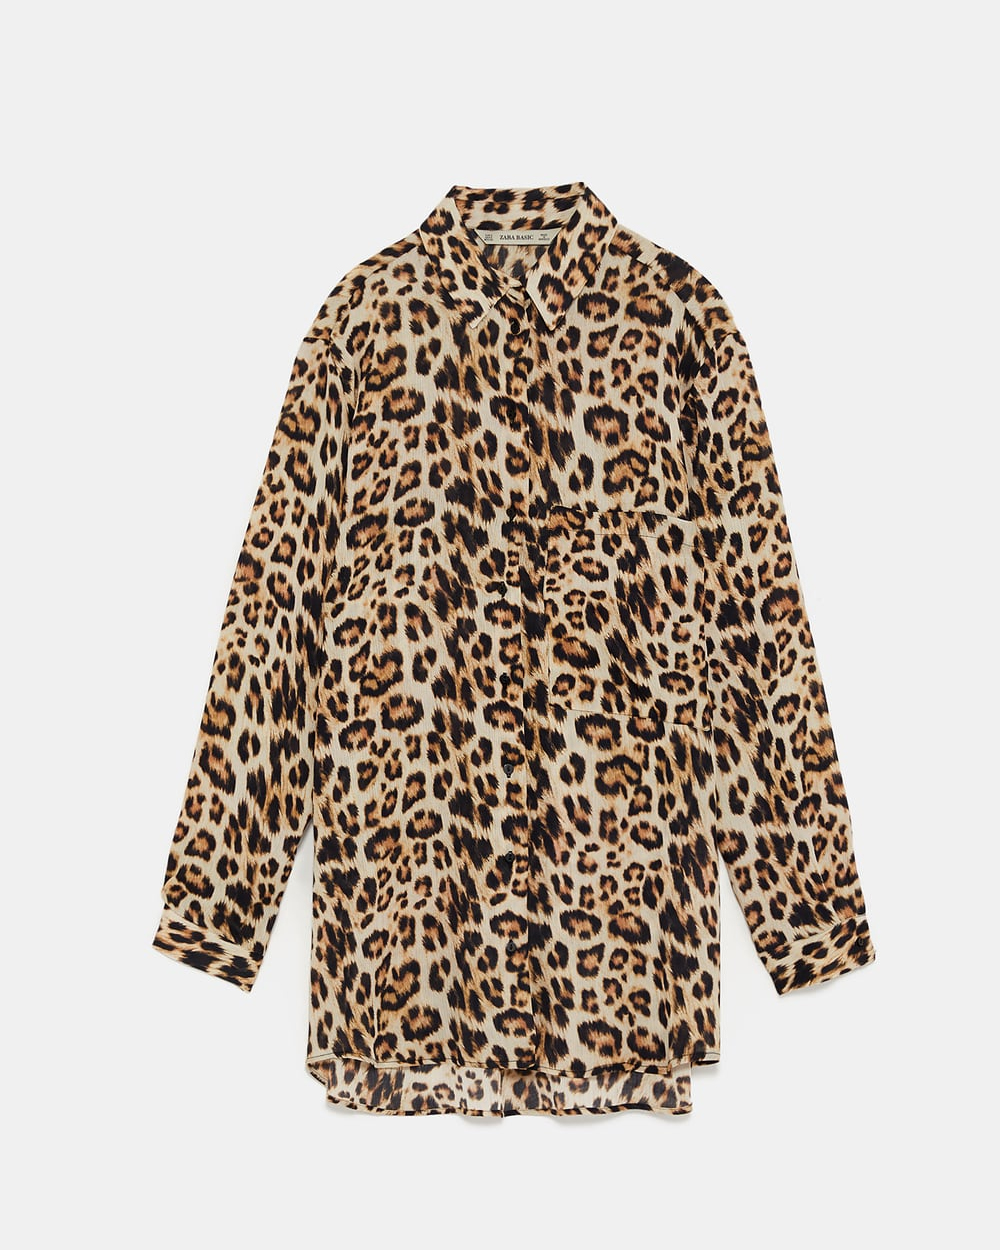 Leopard print shirt, $46 from Zara